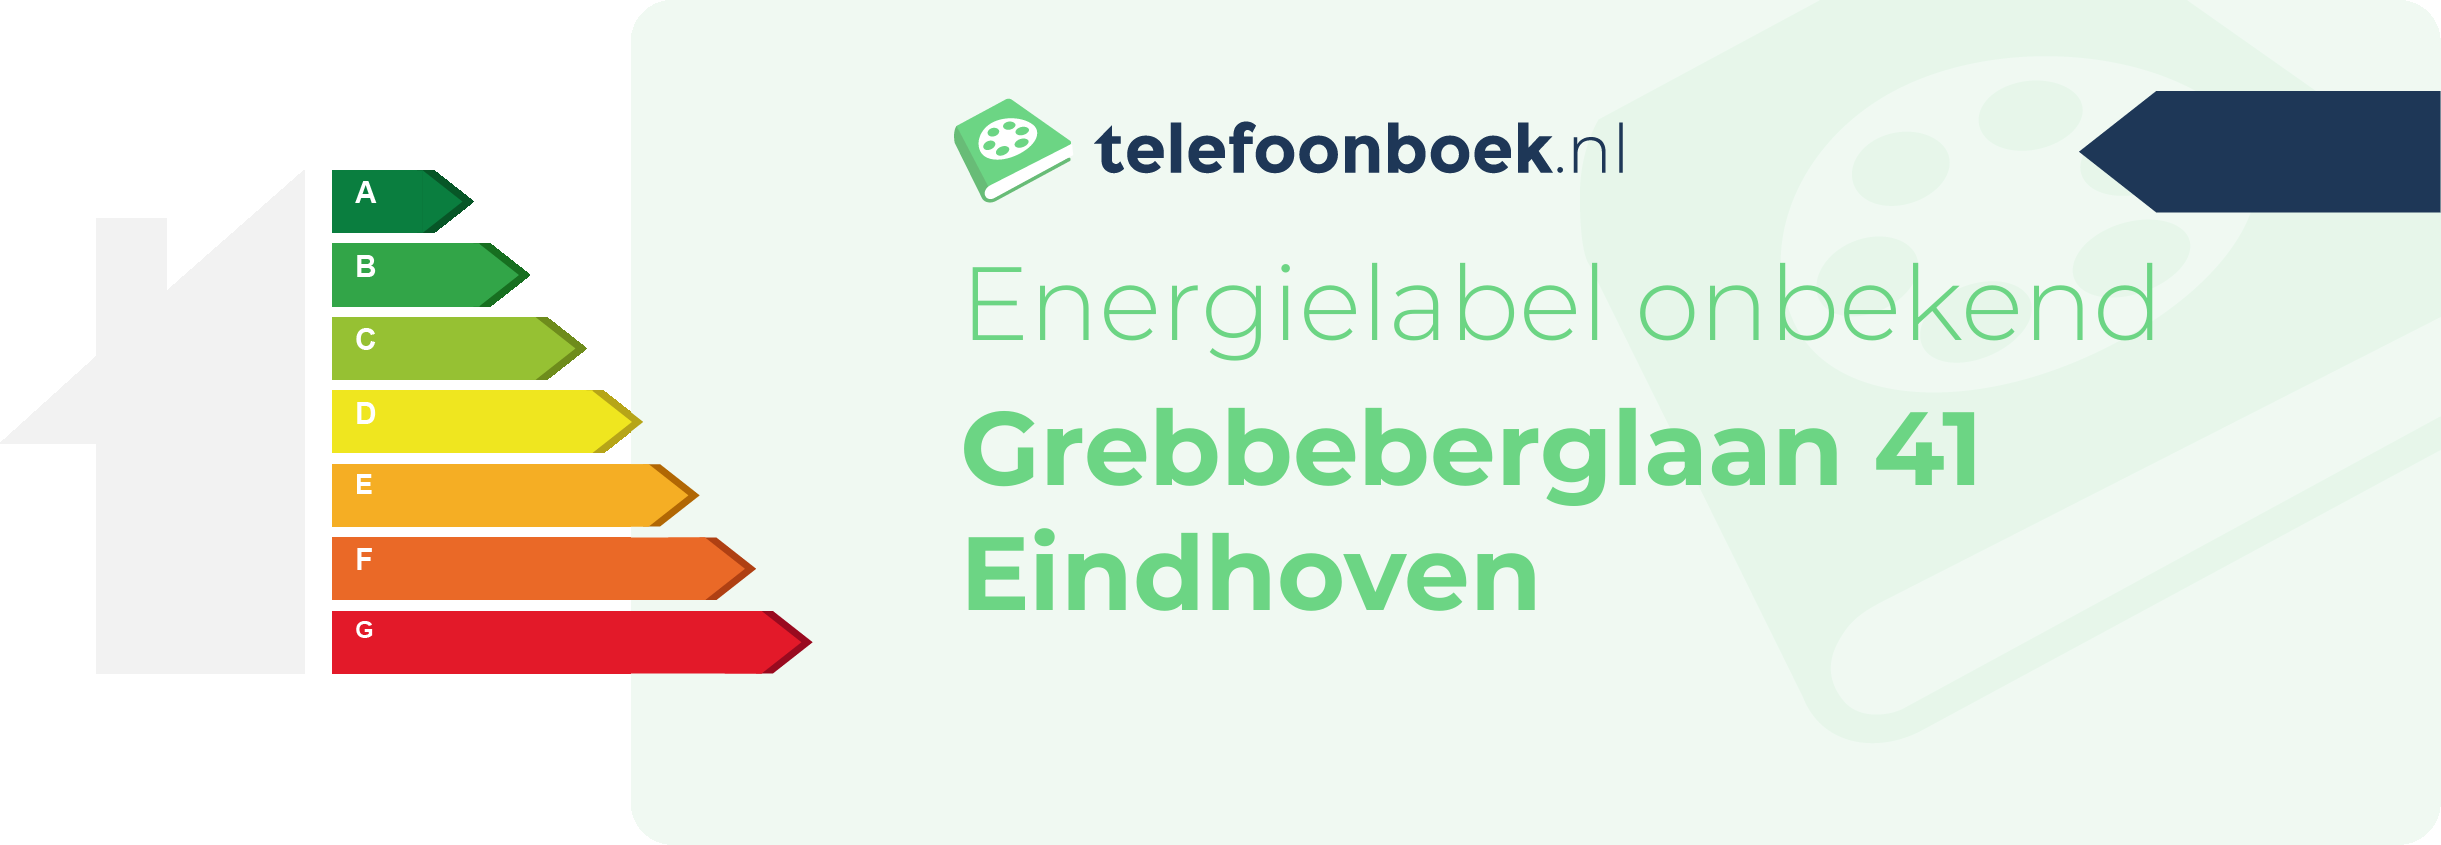 Energielabel Grebbeberglaan 41 Eindhoven